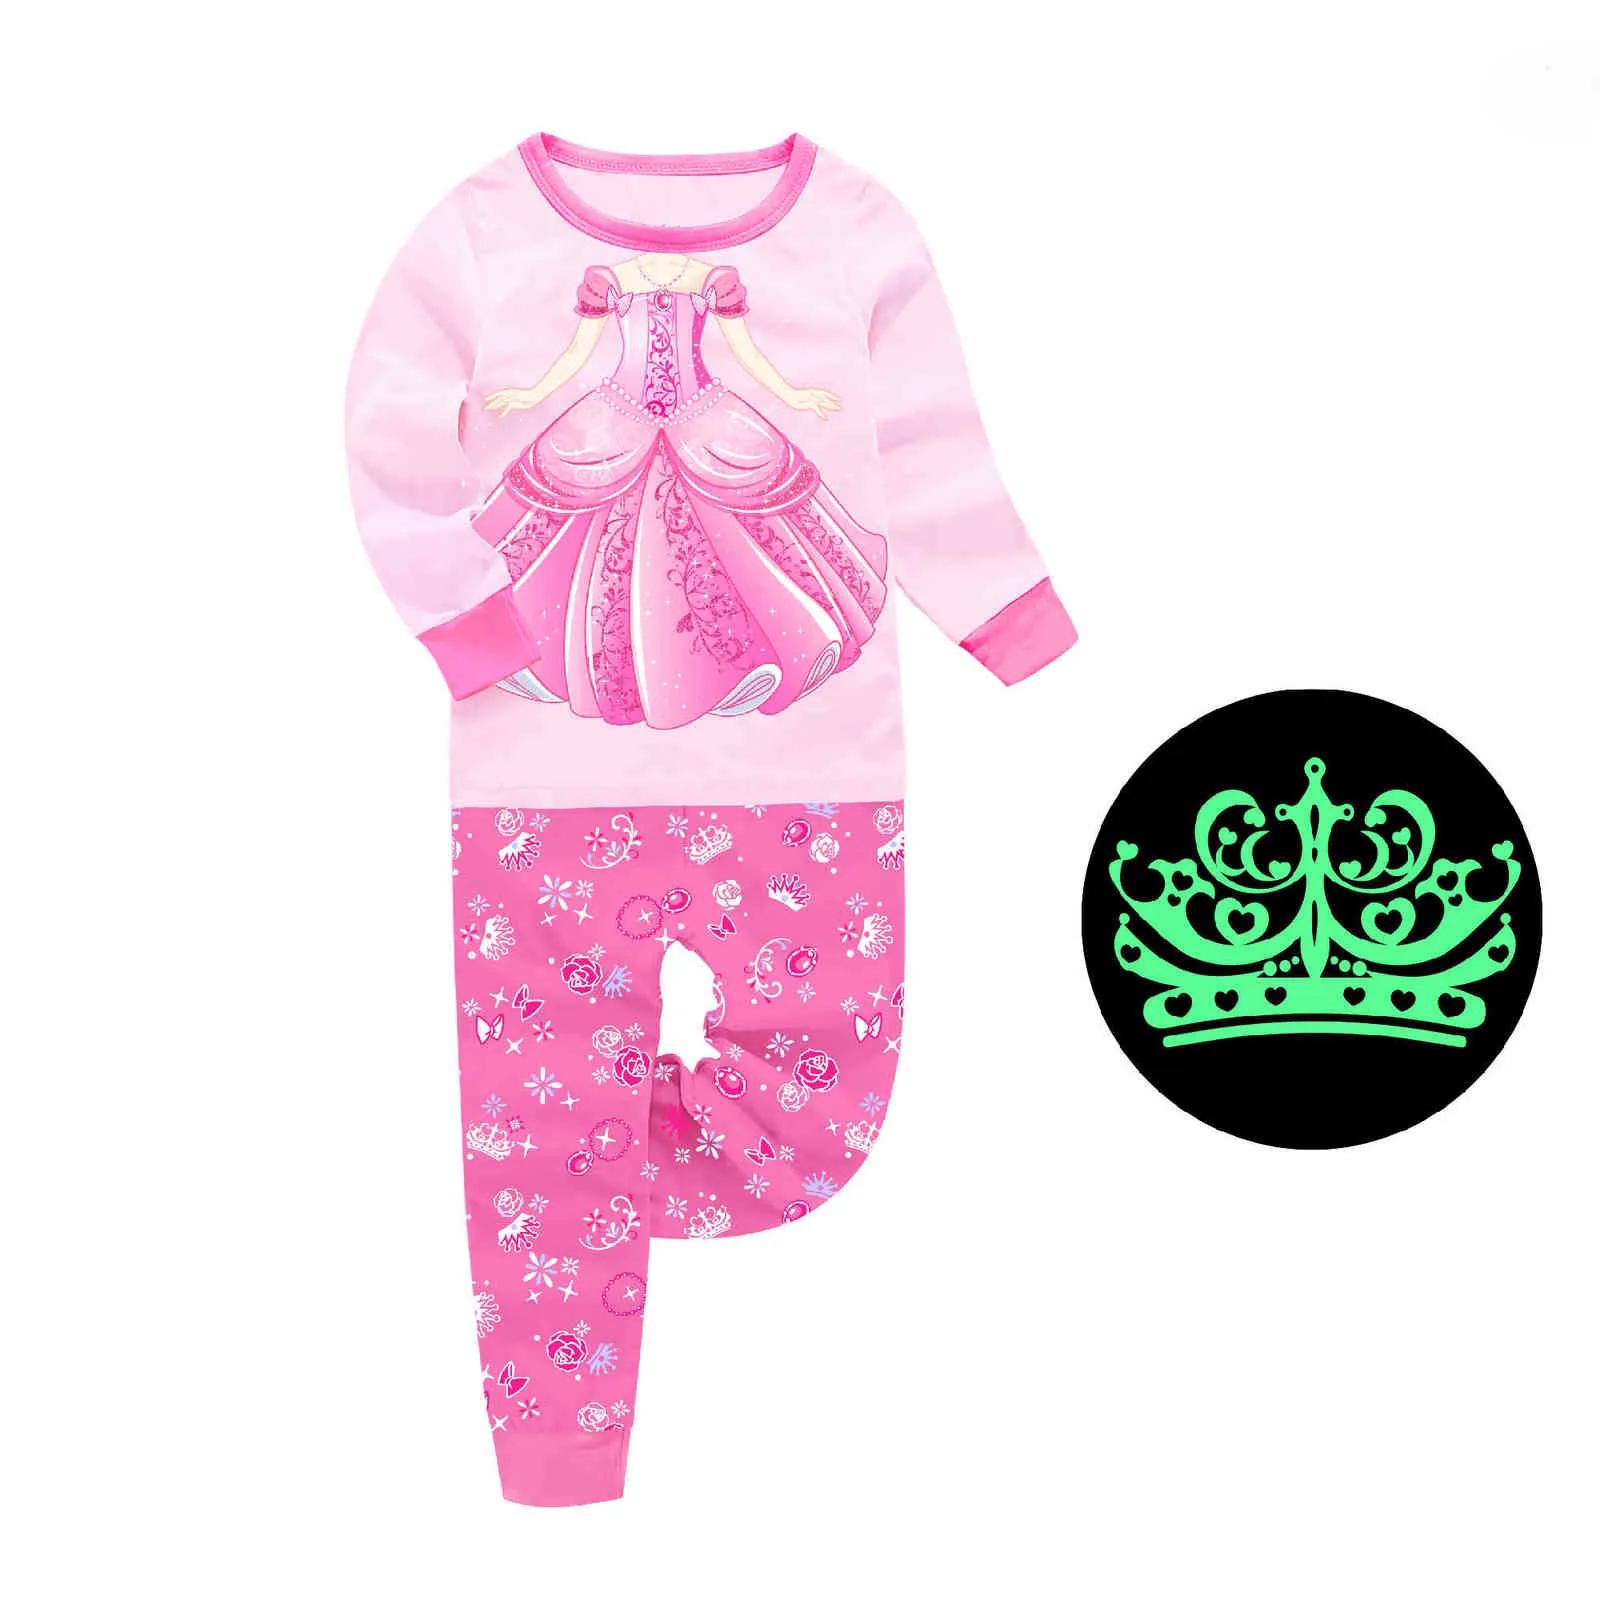 Licorne Pijama Enfants Coton Pyjama Set Cartoon Pyjama Vêtements Automne Enfants Pjs Bébé Glow dans le noir pour Teen Girls Home Suit 211109